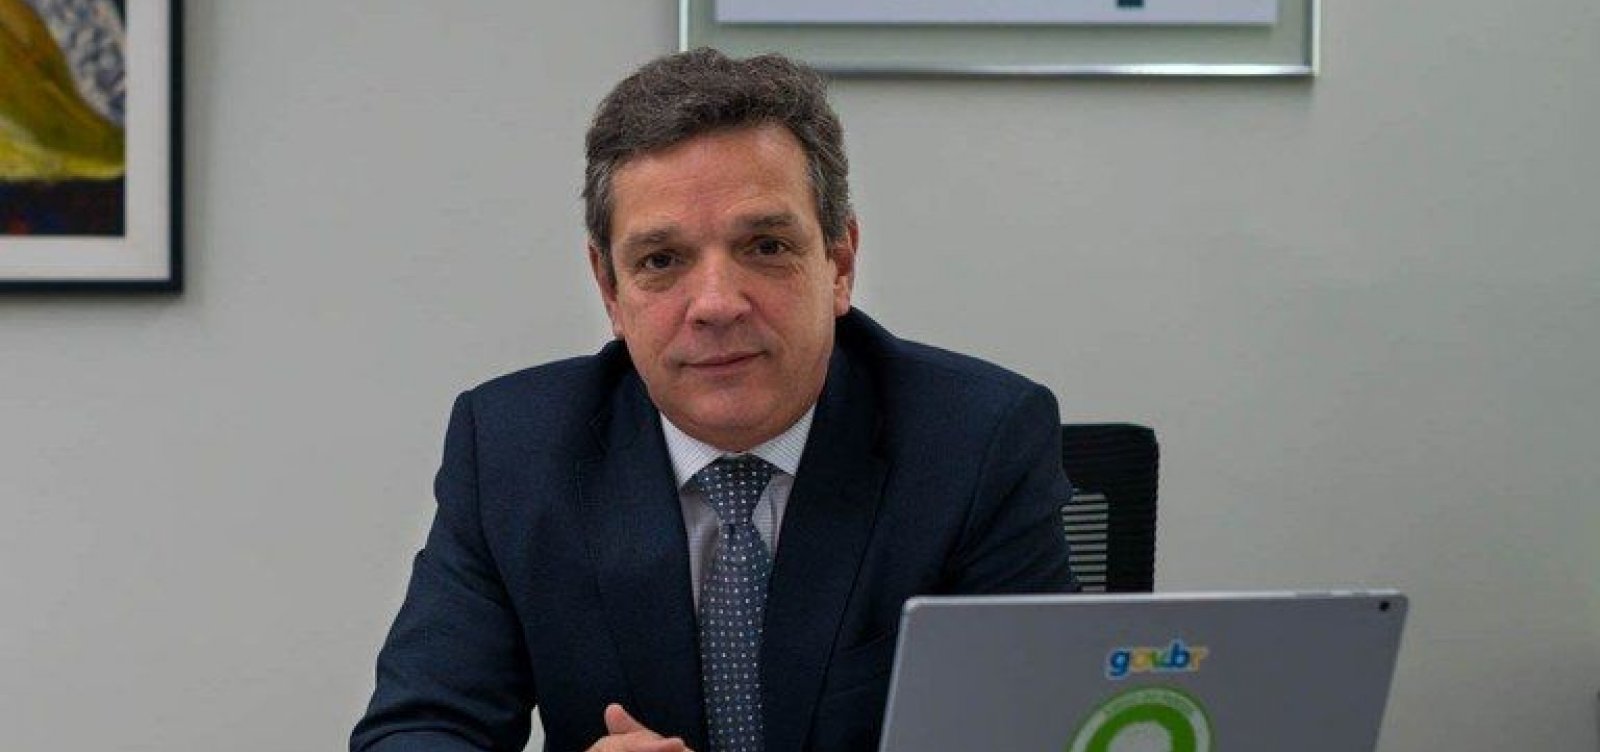 Indicado à presidência da Petrobras, Andrade nega recomendação do governo para mudar política de preços